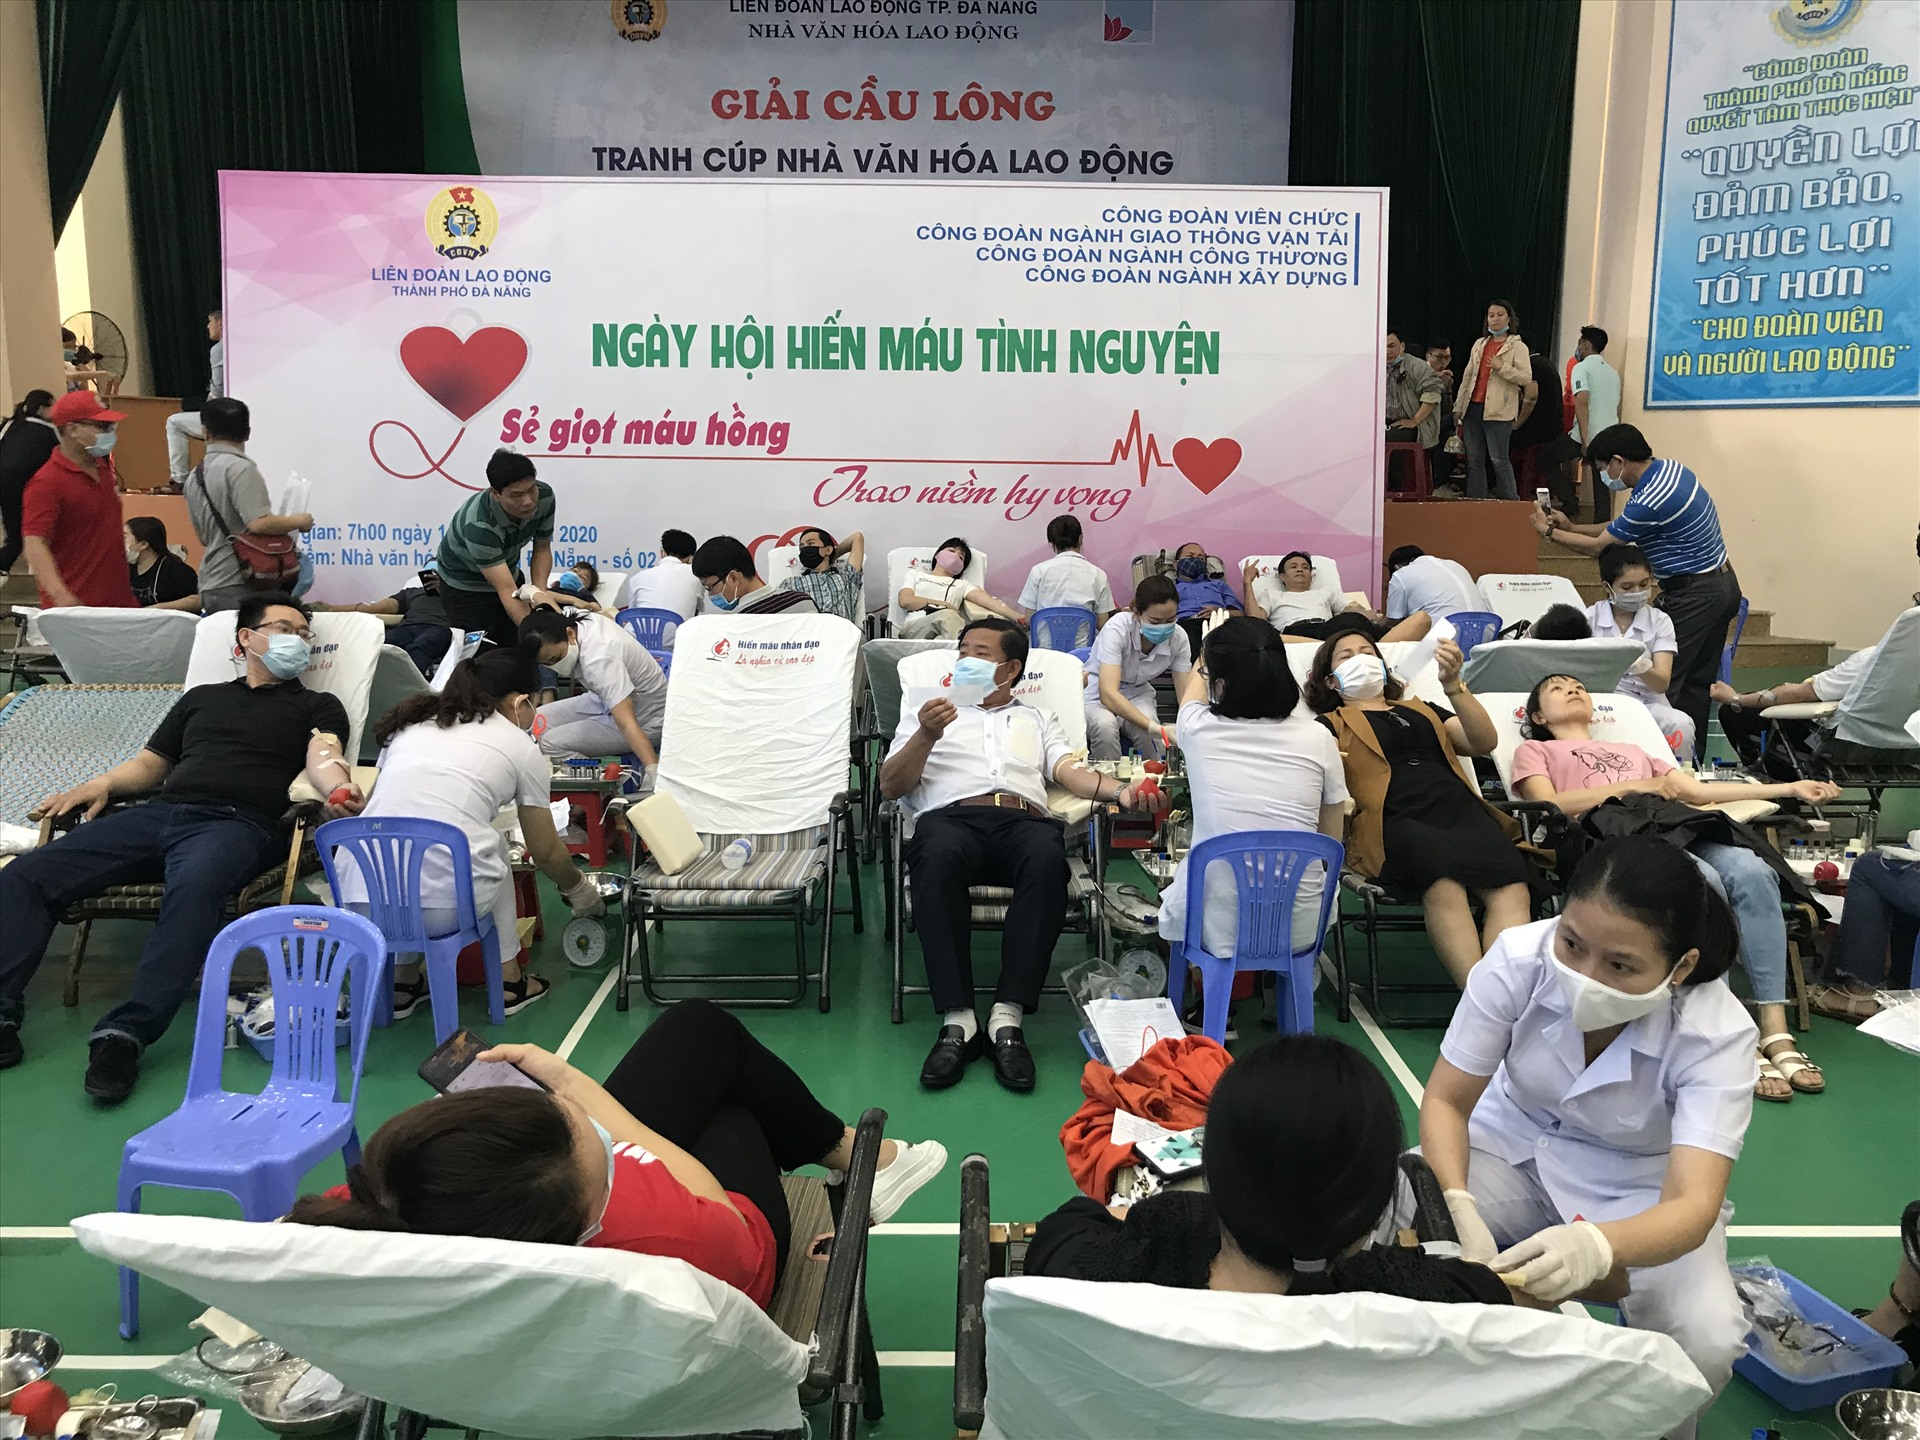 Ngày hội hiến máu do LĐLĐ Đà Nẵng tổ chức thu hút hơn 1000 đoàn viên tham gia. Ảnh: H.V.M